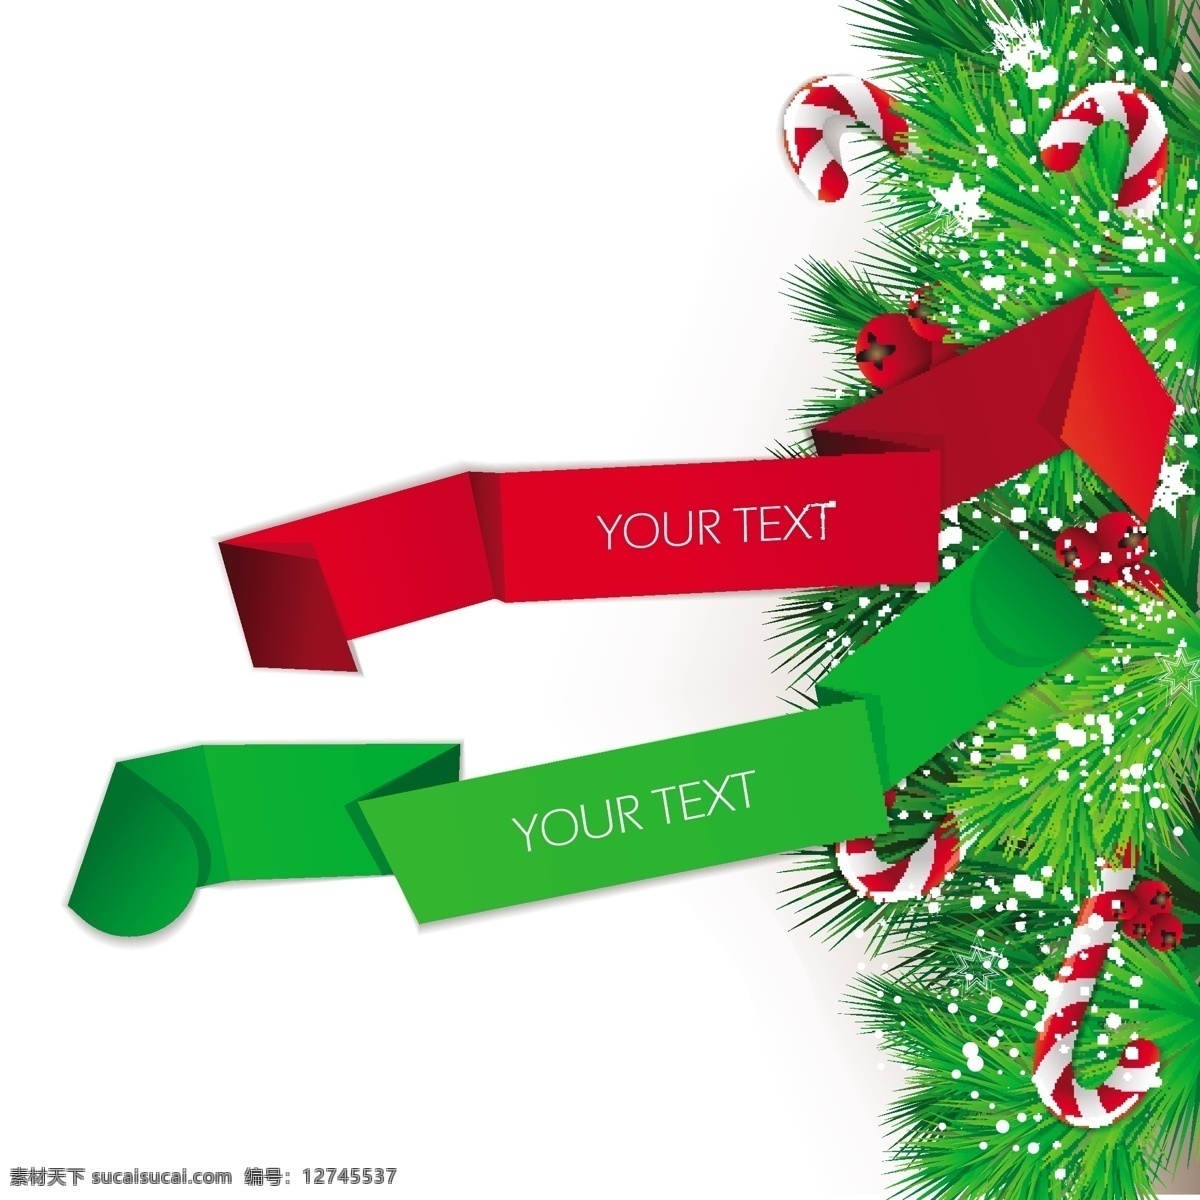 矢量 圣诞 节日 装饰 丝带 彩色丝带 礼物 圣诞节 圣诞树 节日装饰礼品 节日素材